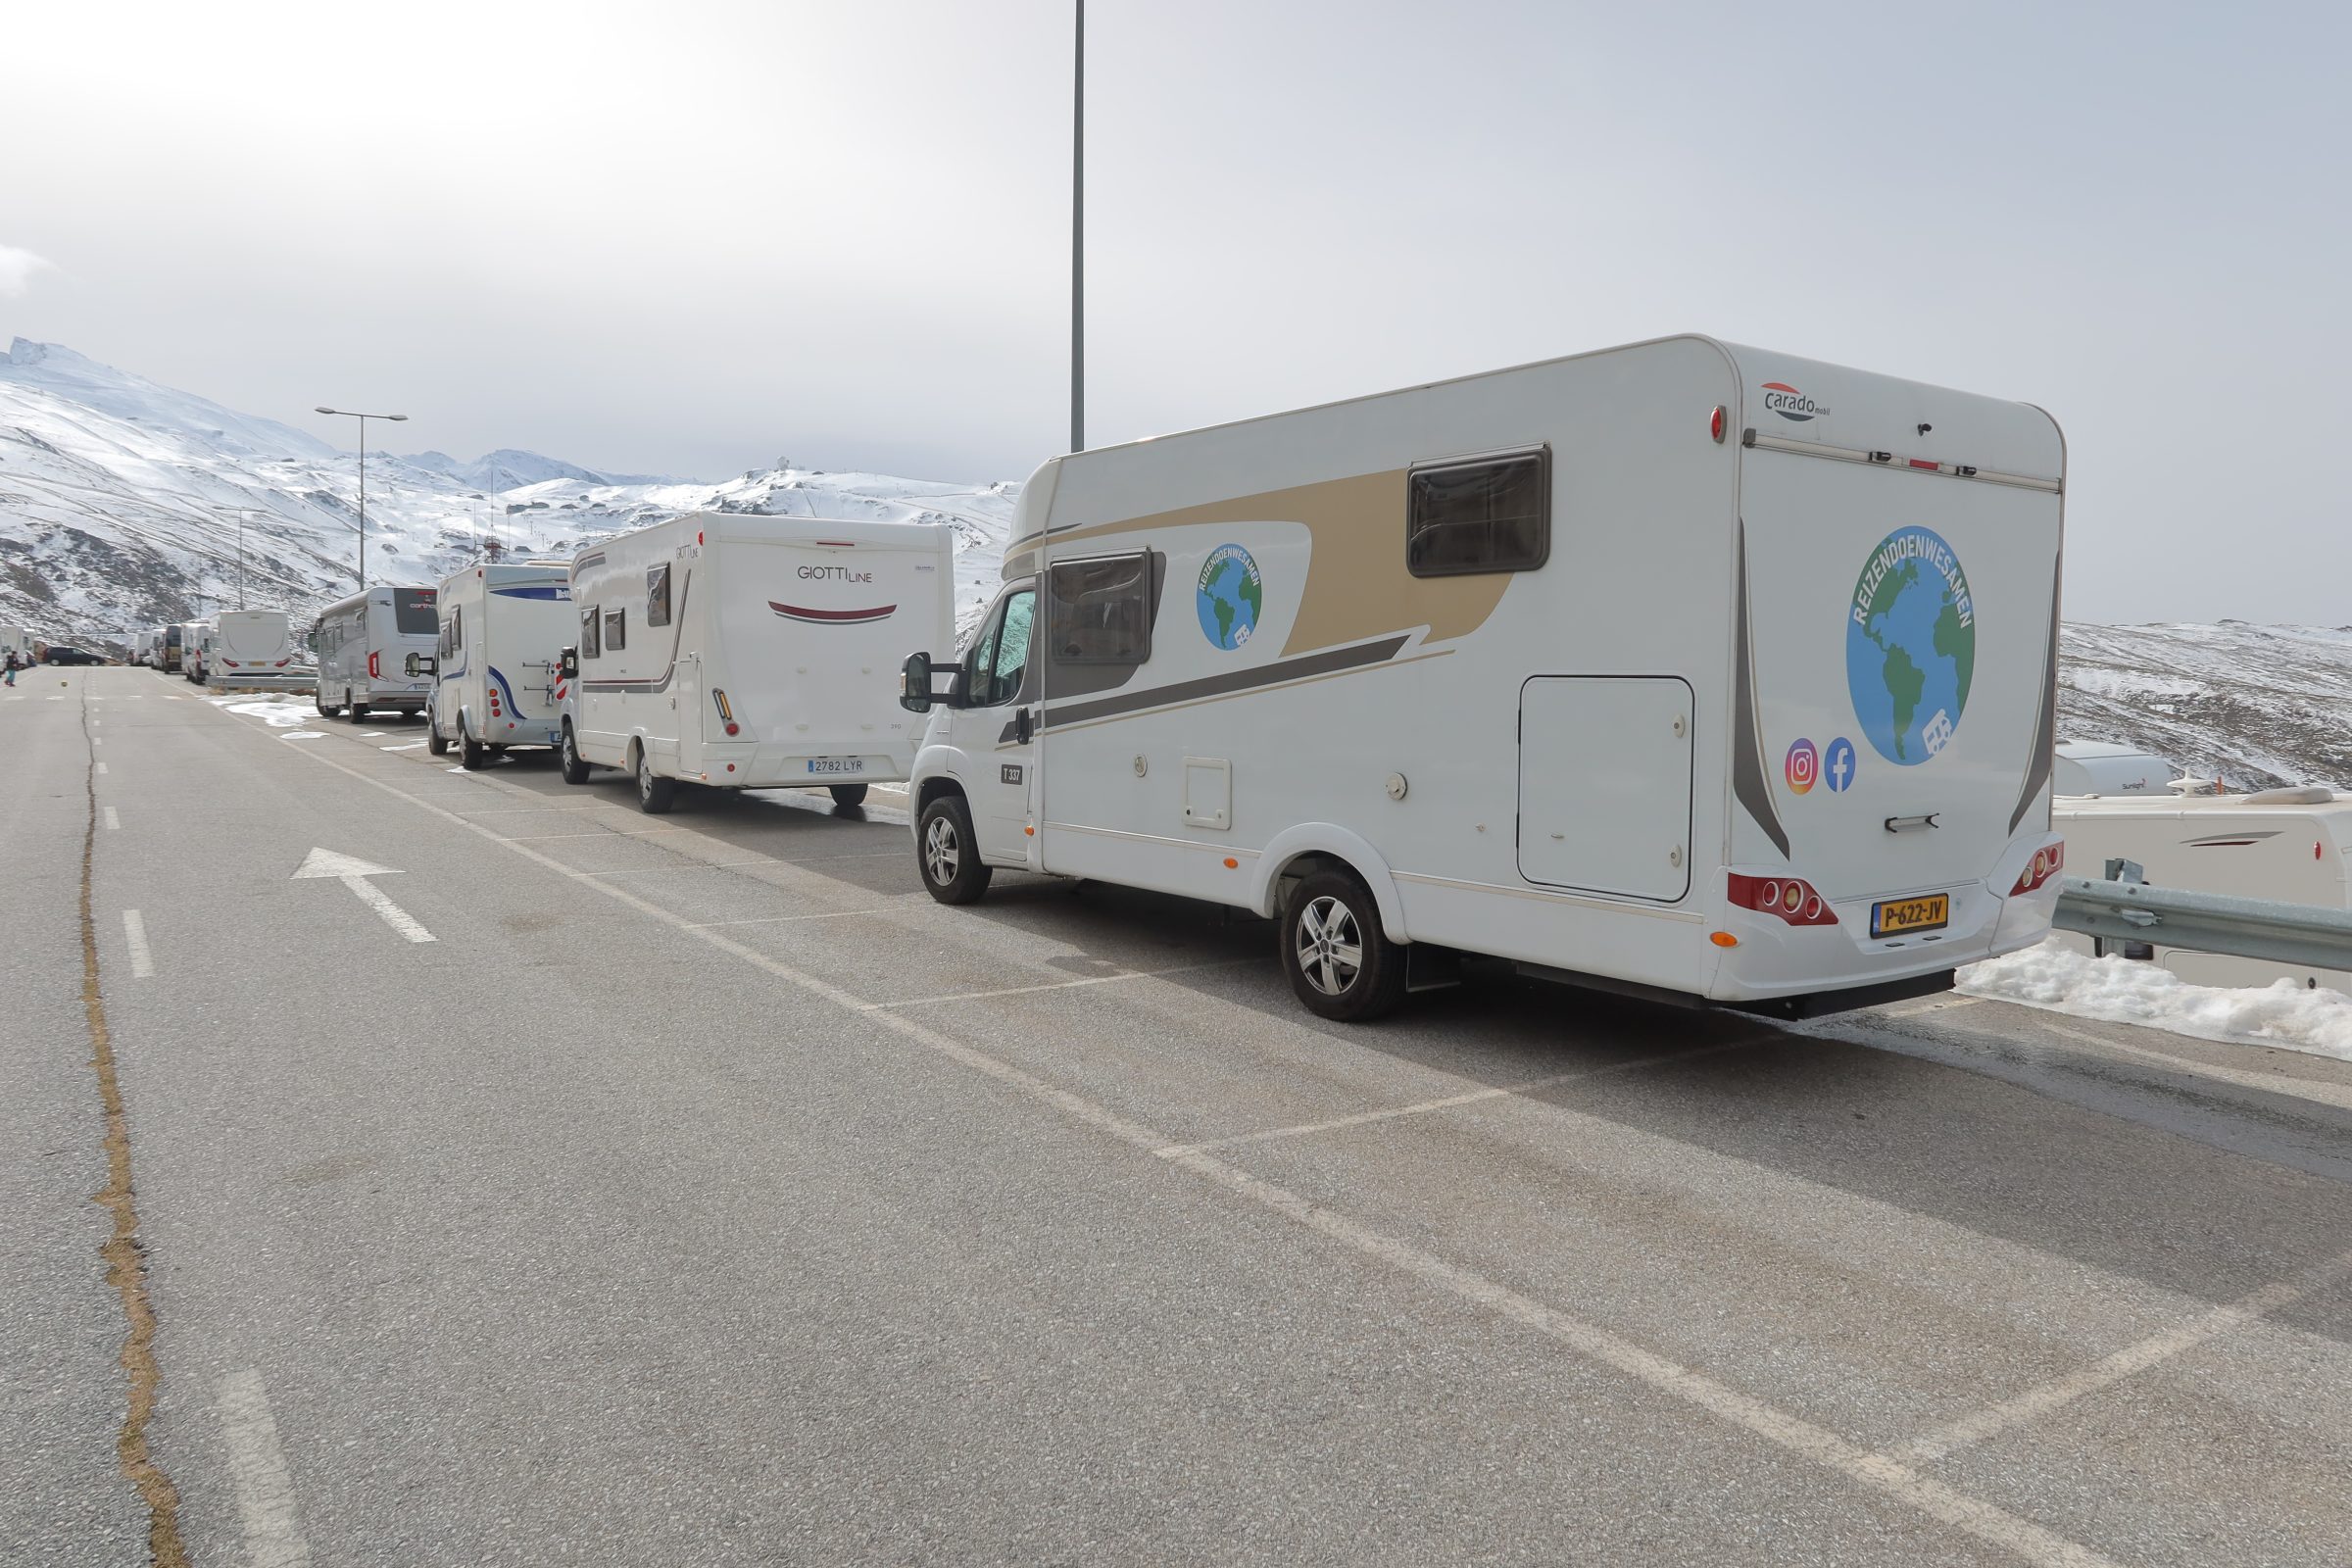 S karavanem na sněhu v Sierra Nevada | Tipy pro obytné vozy a zajímavá místa v jižním Španělsku